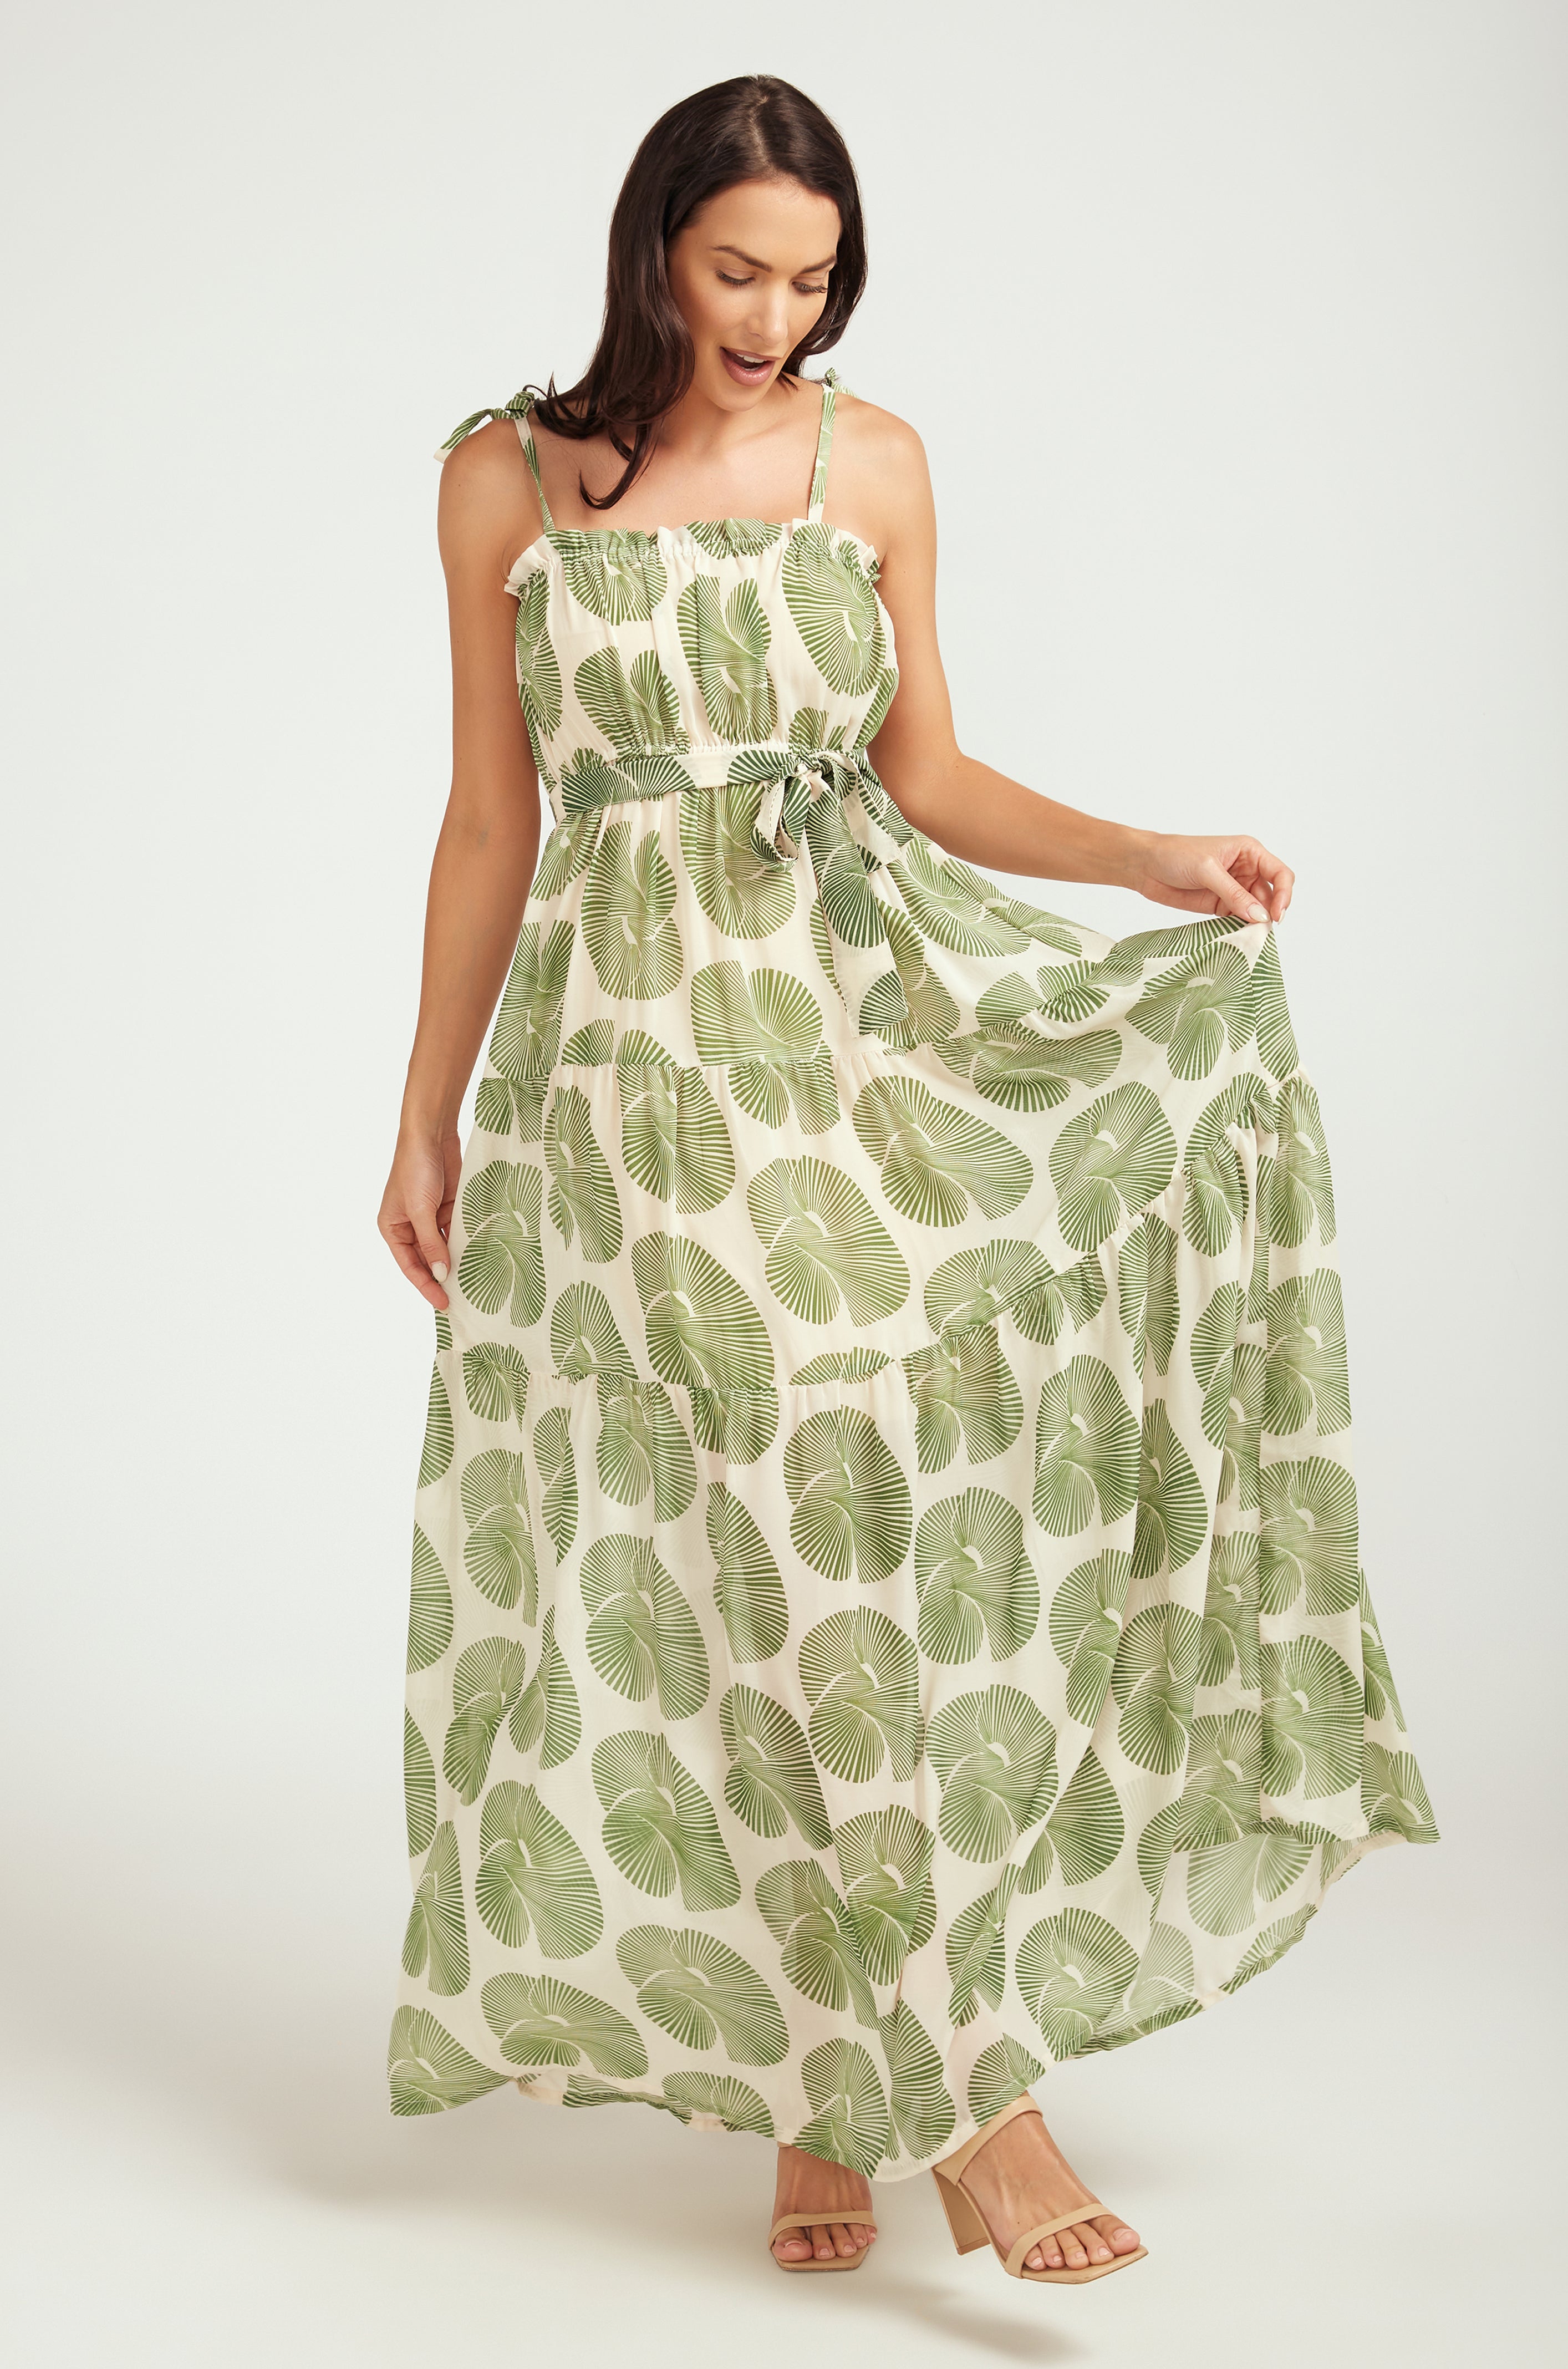 MAXI Tiered Dress / Green Fan Print